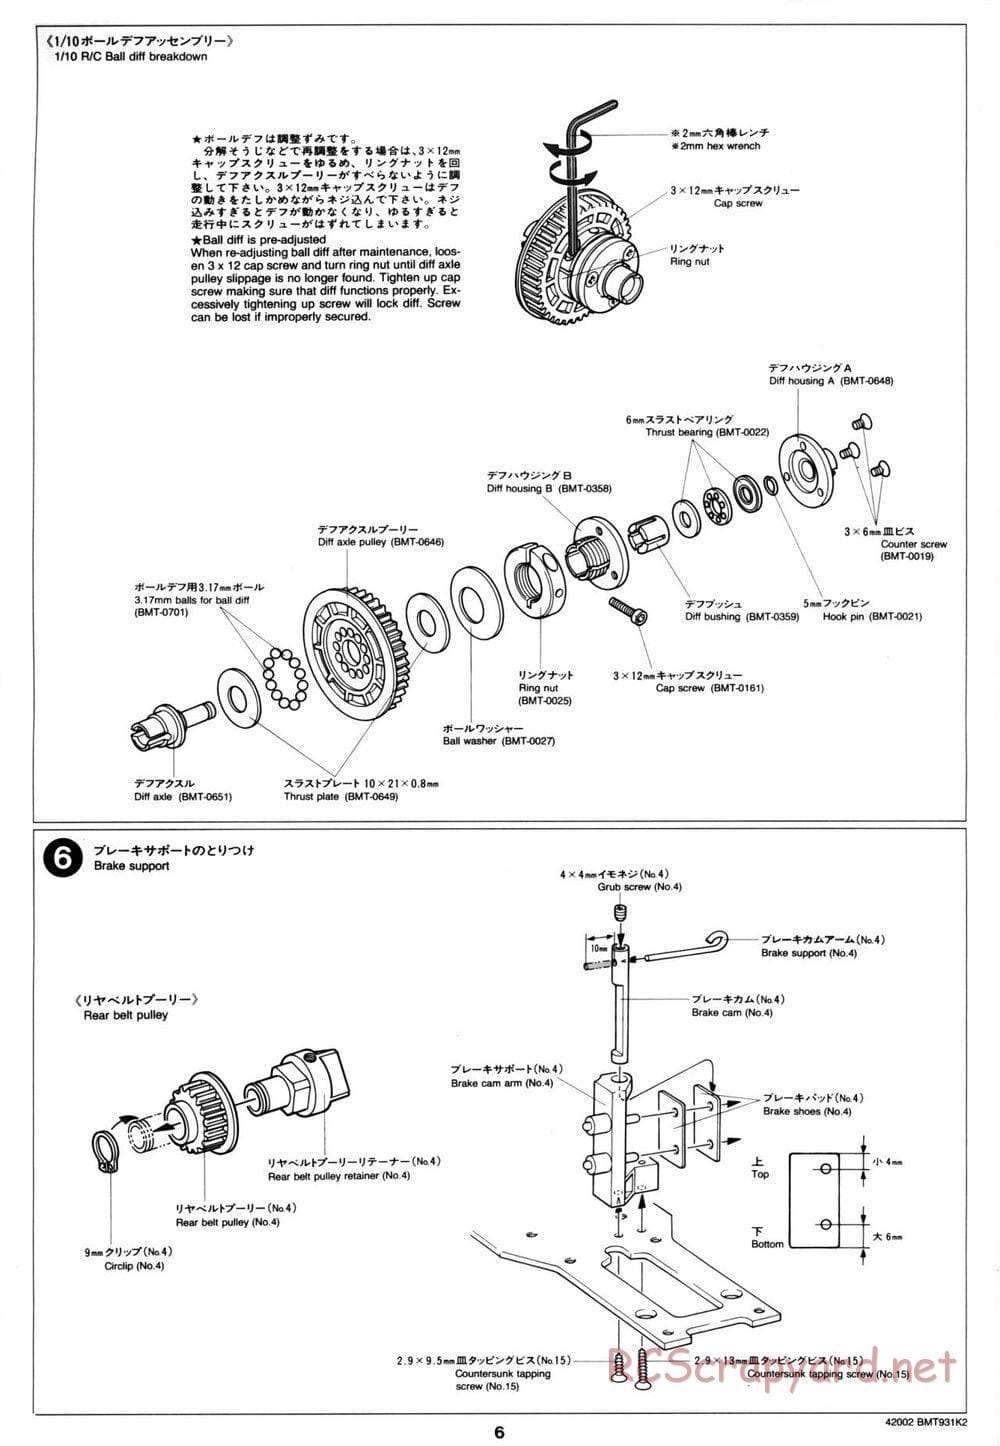 Tamiya - BMT 931 K2 Racing Chassis - Manual - Page 6